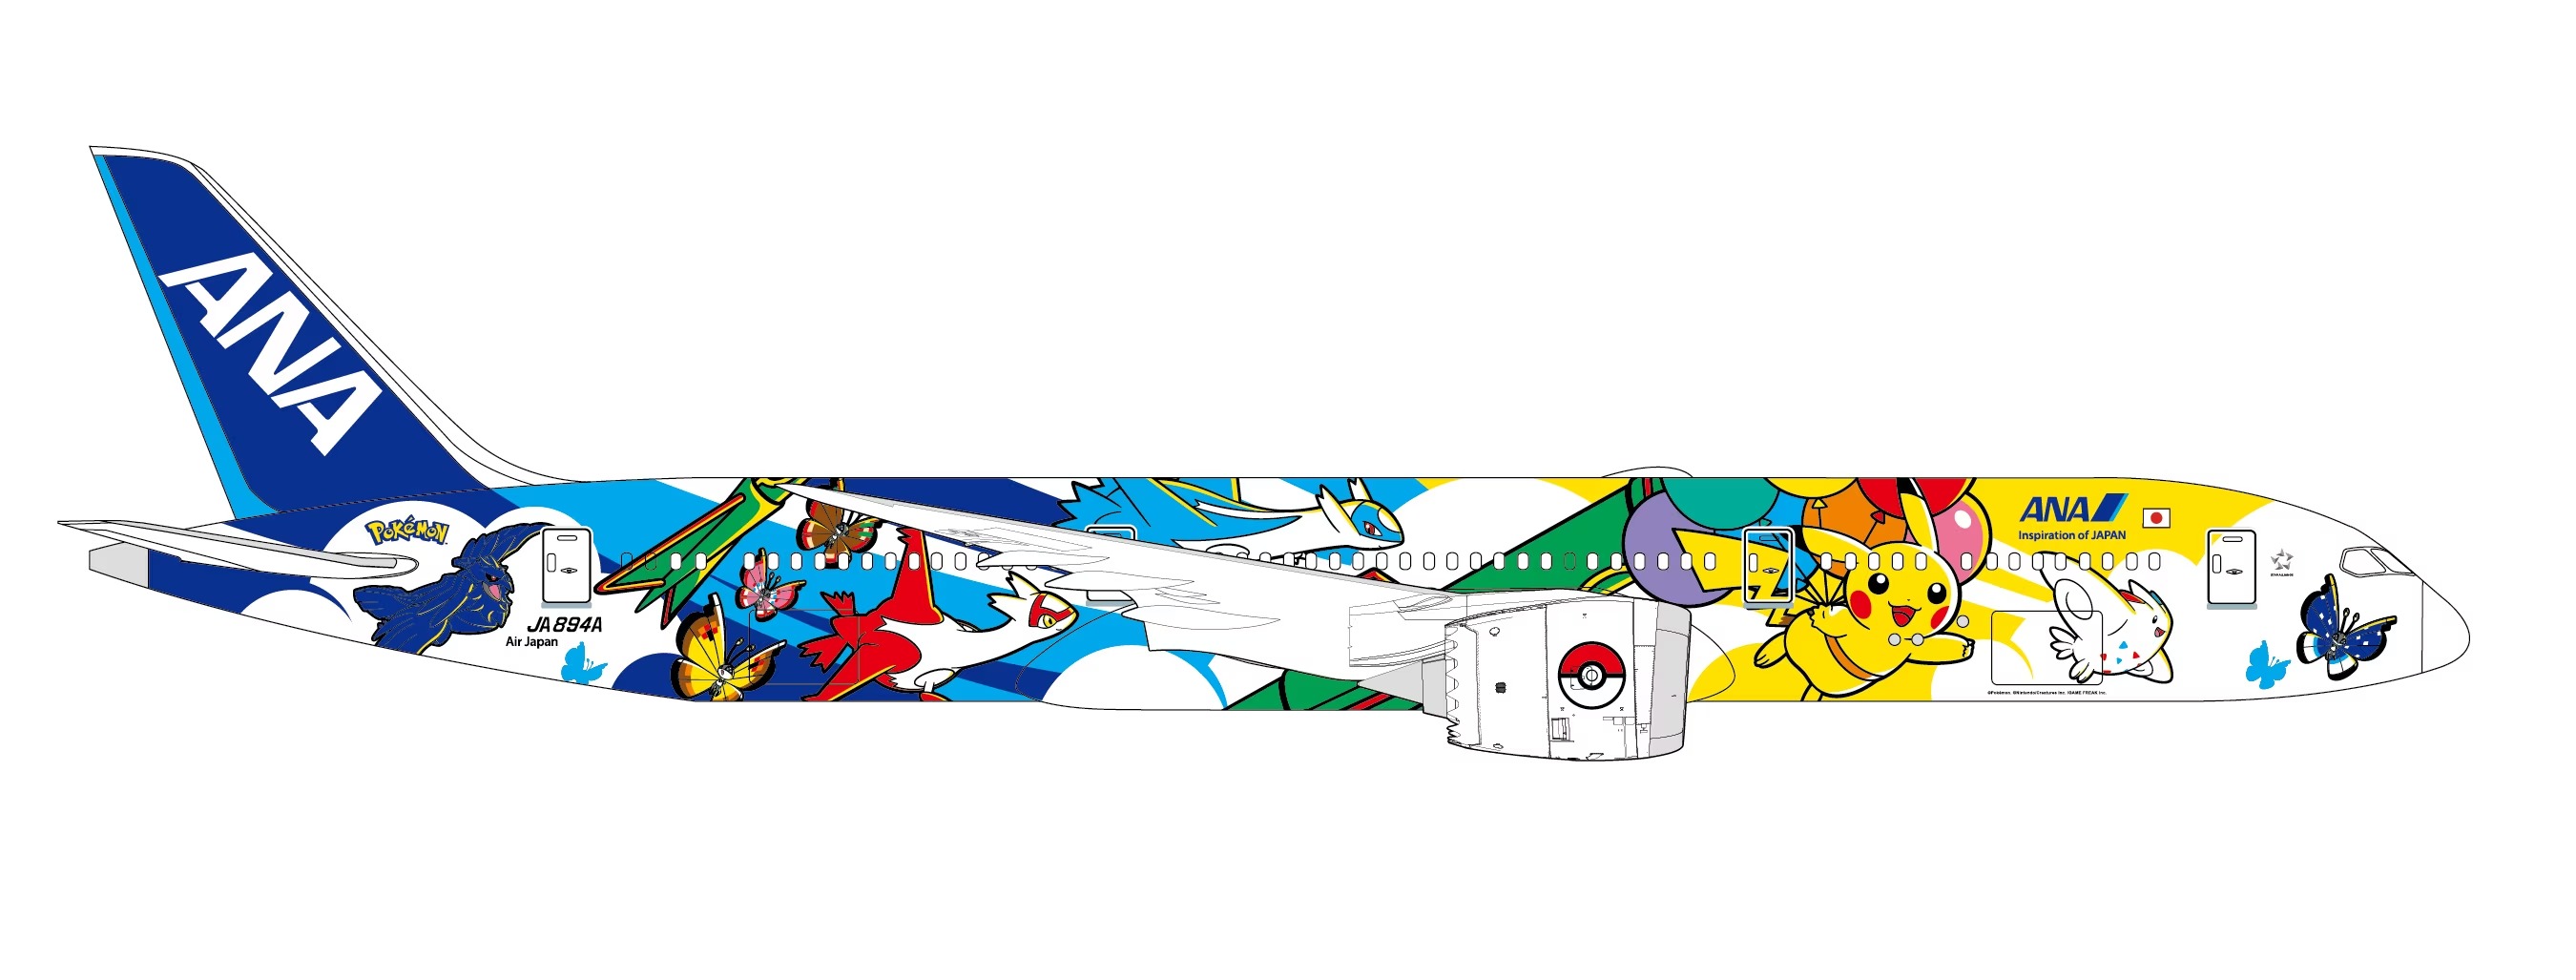 Pokémon ANA plane